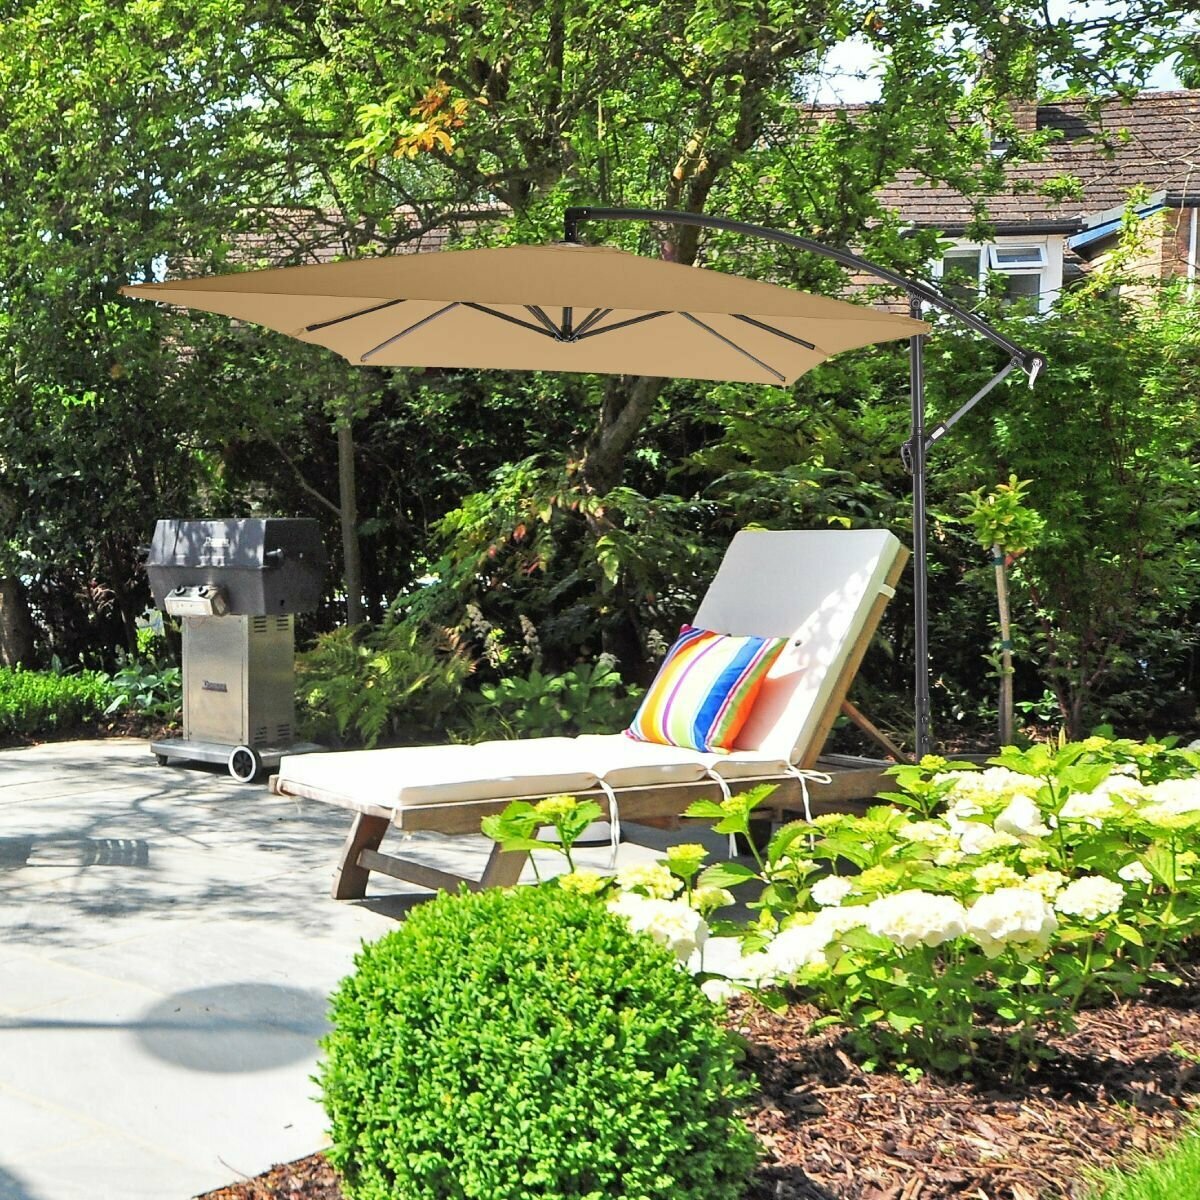 Садовый зонт большой Green Glade 6403 светло-коричневый для дачи, кемпинга, пикника и отдыха на природе, пляжный, складной, уличный зонтик с наклоном для защиты от солнца